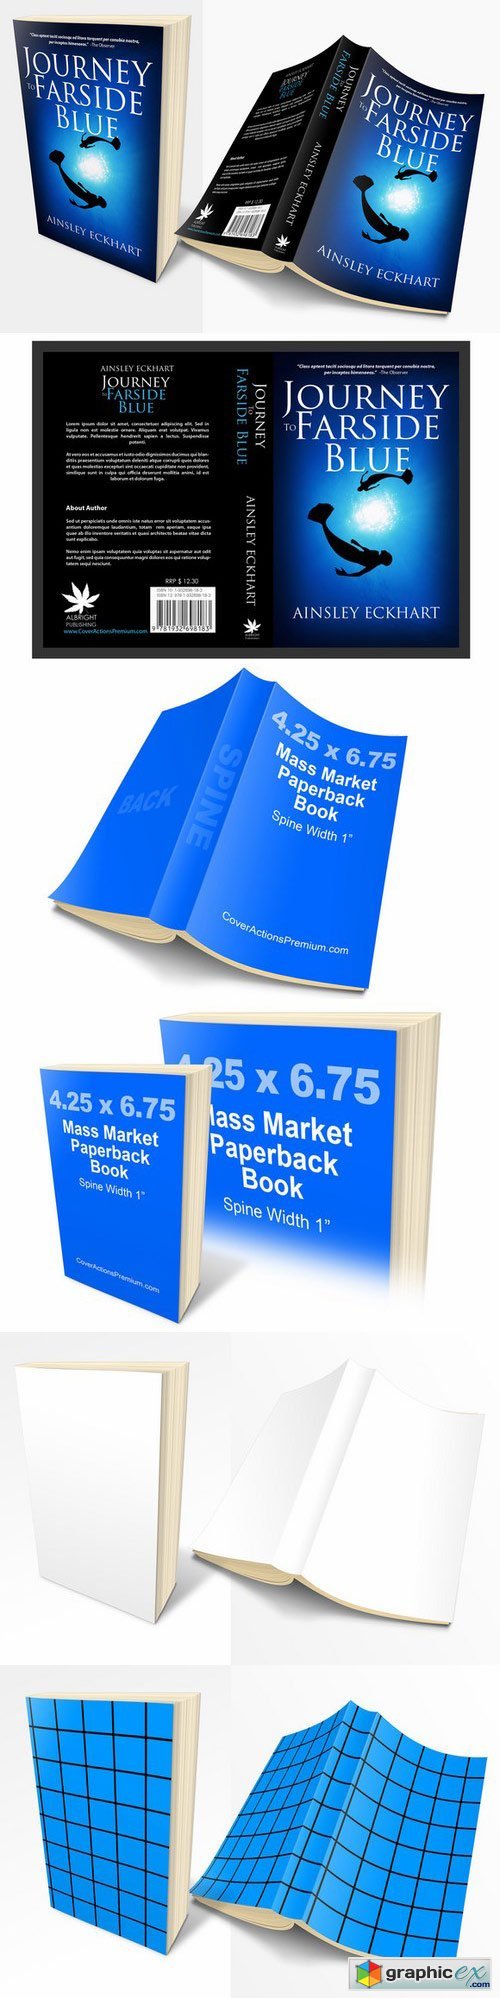 Mass Market Paperback Book Mockups